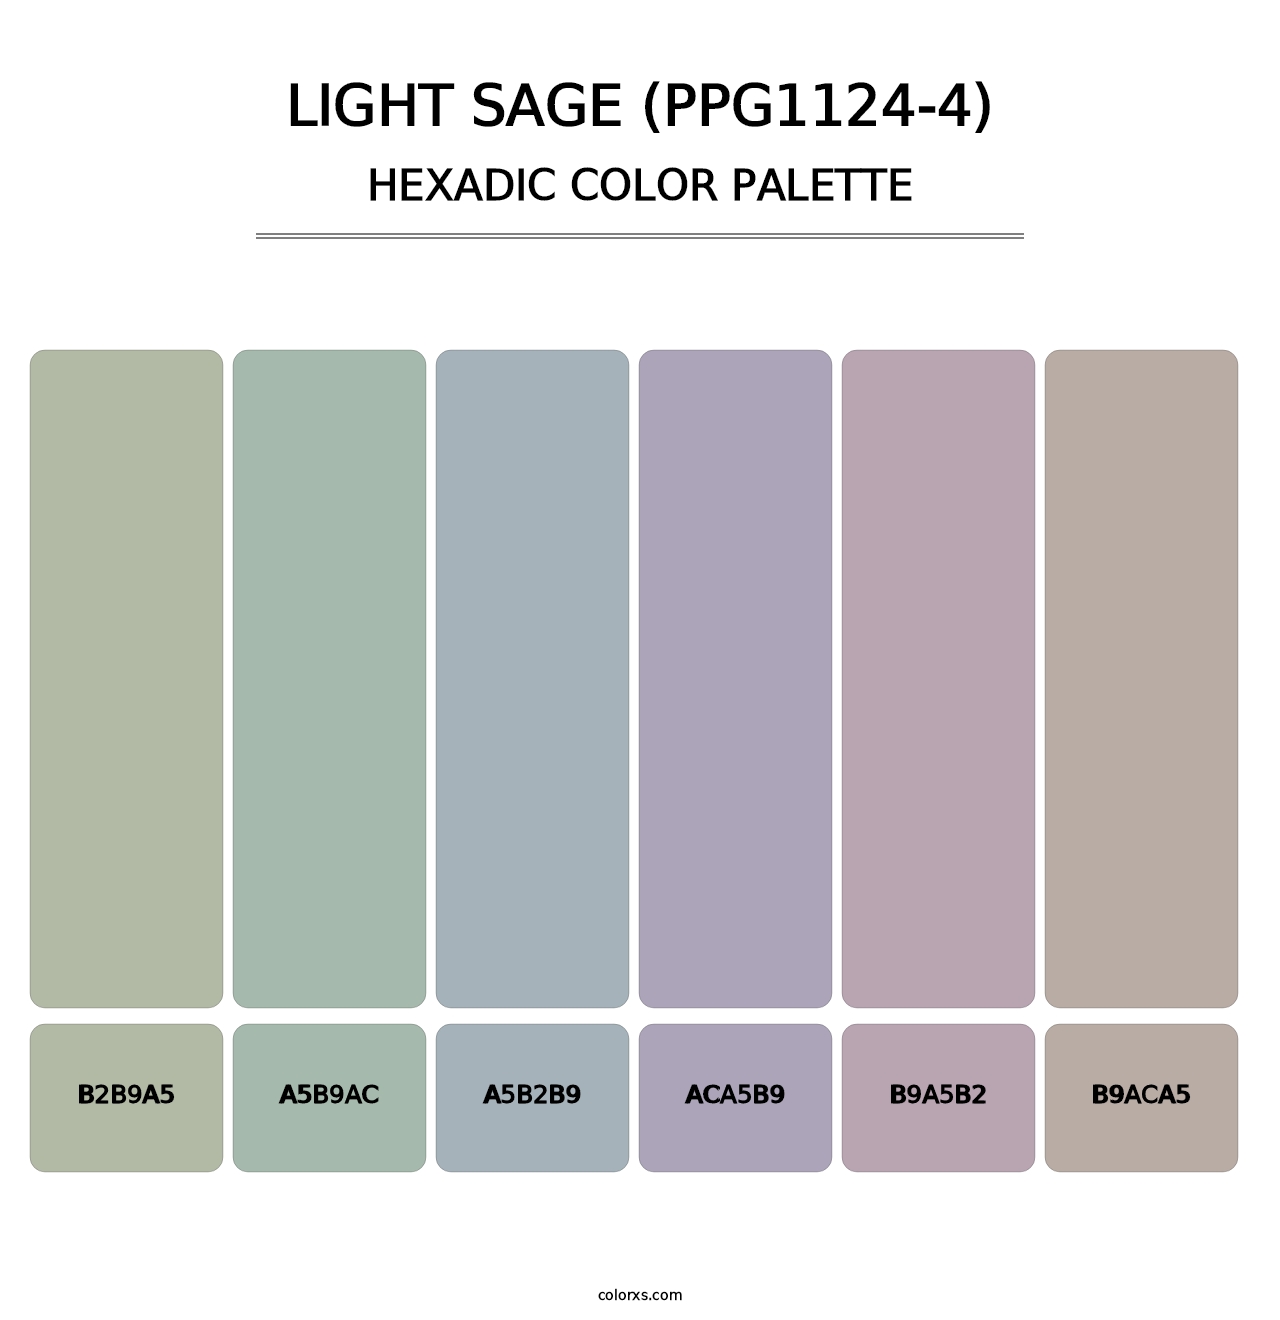 Light Sage (PPG1124-4) - Hexadic Color Palette